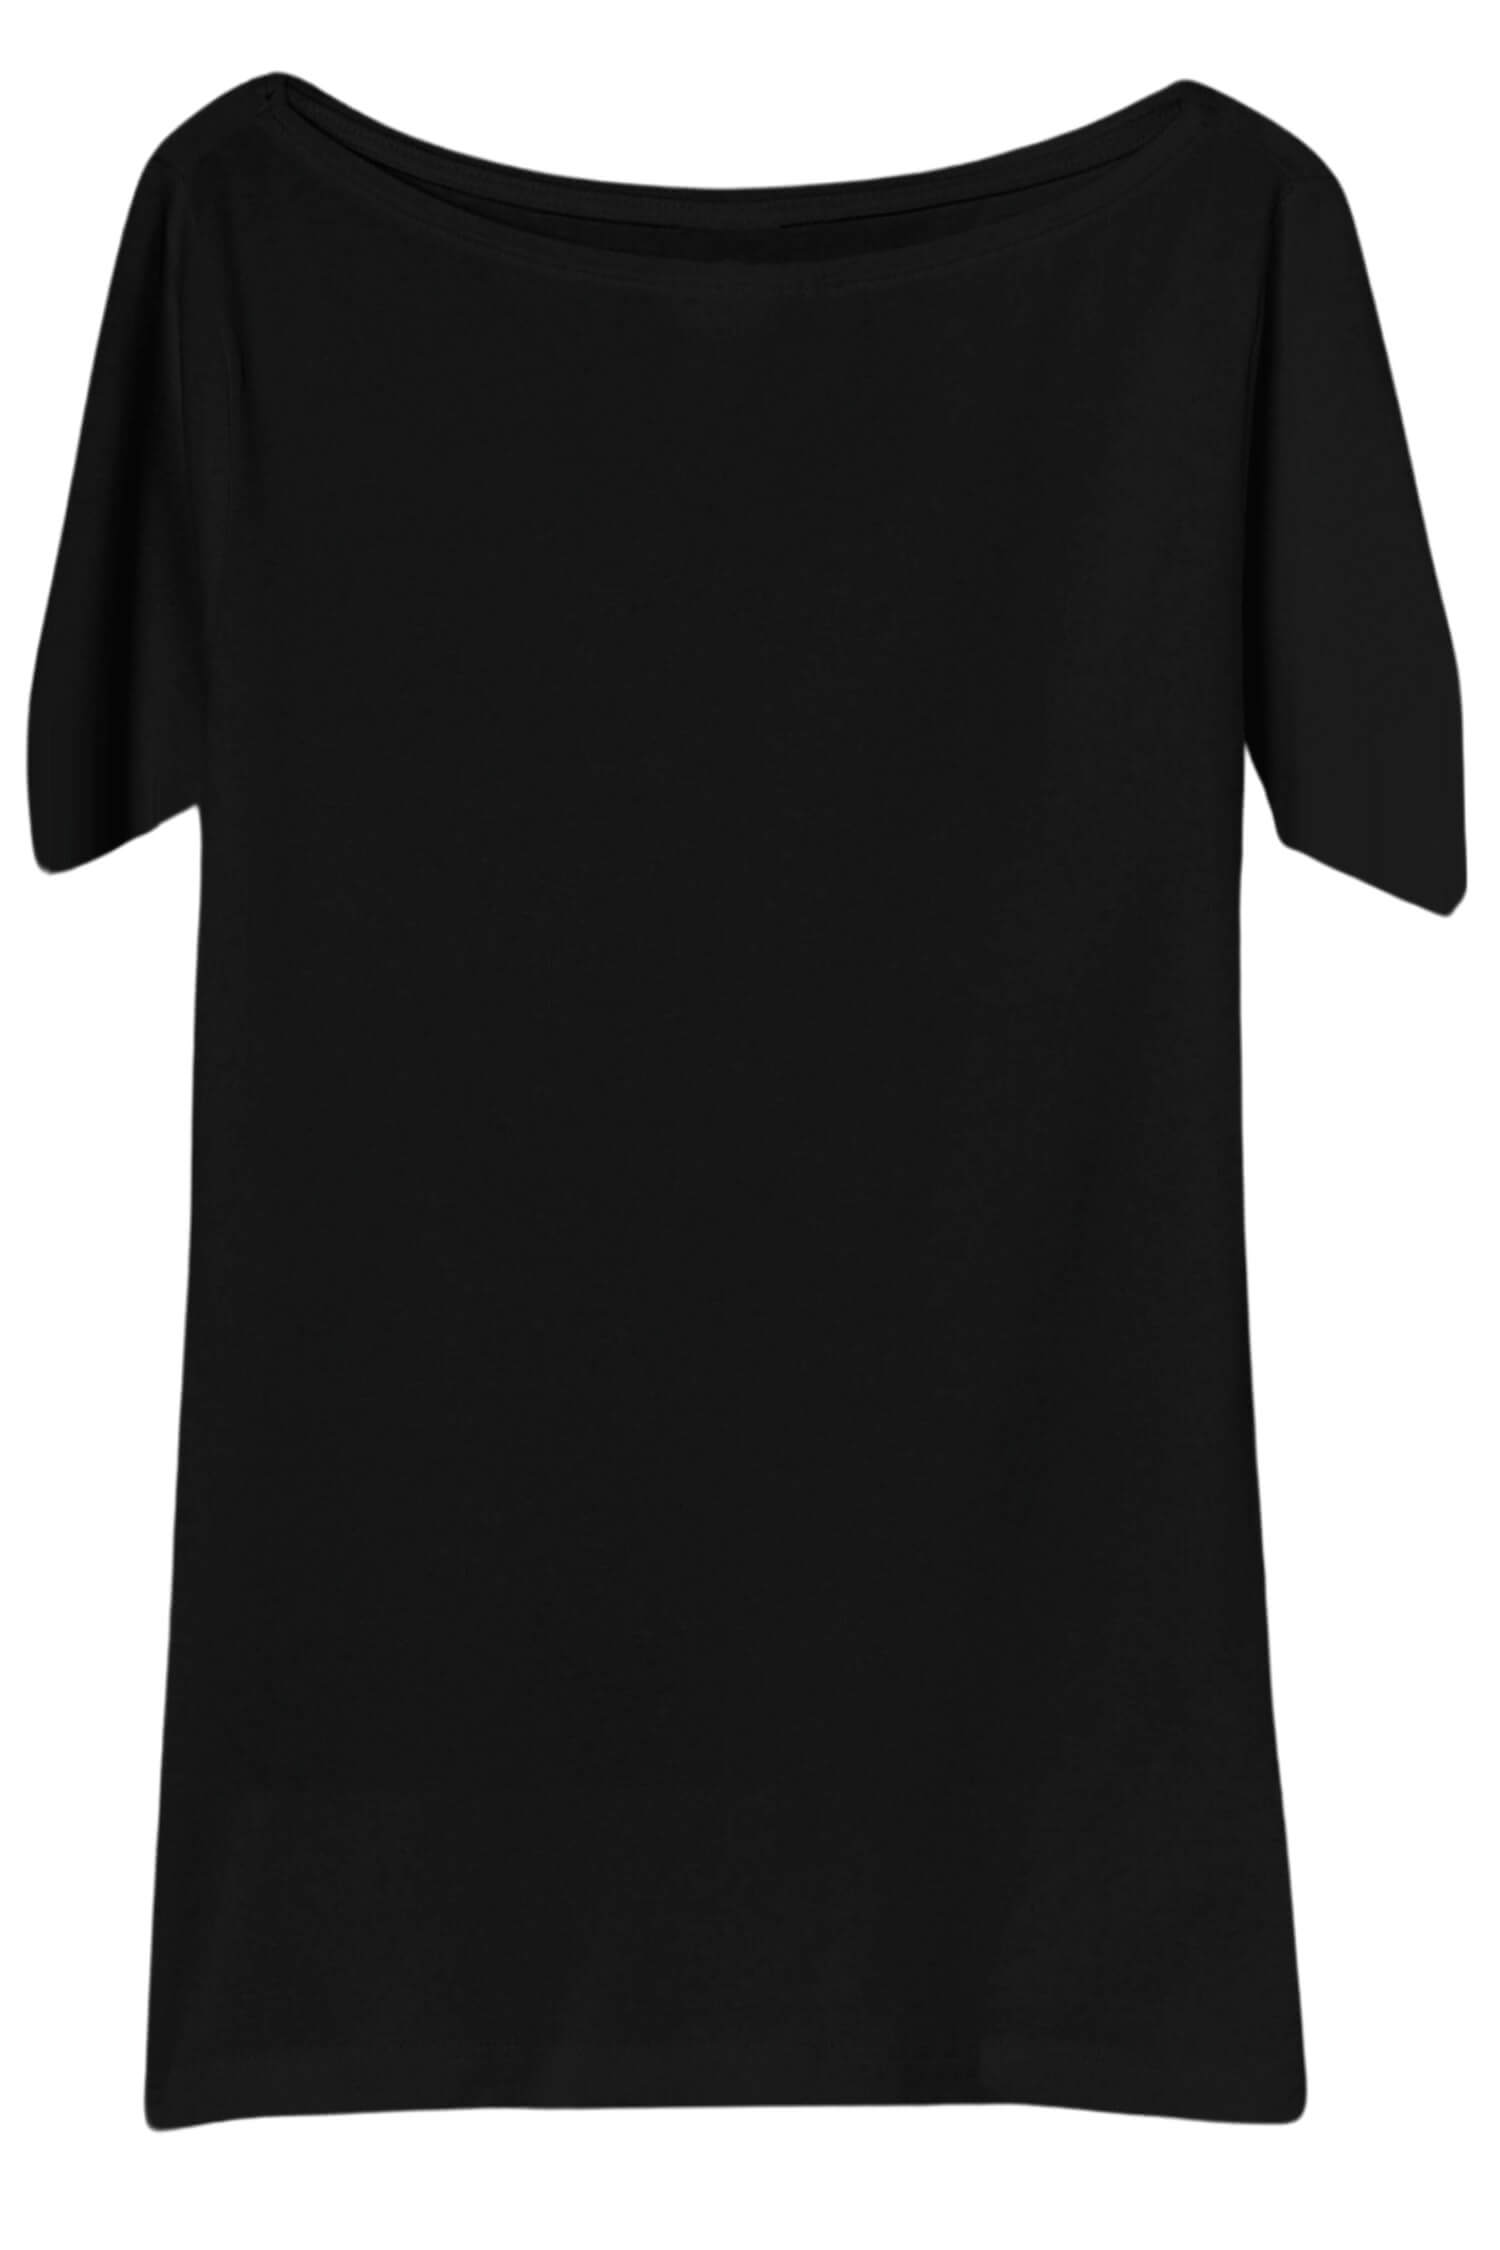 Danica dámské tričko s krátkým rukávem TSK-1005 černá XXL